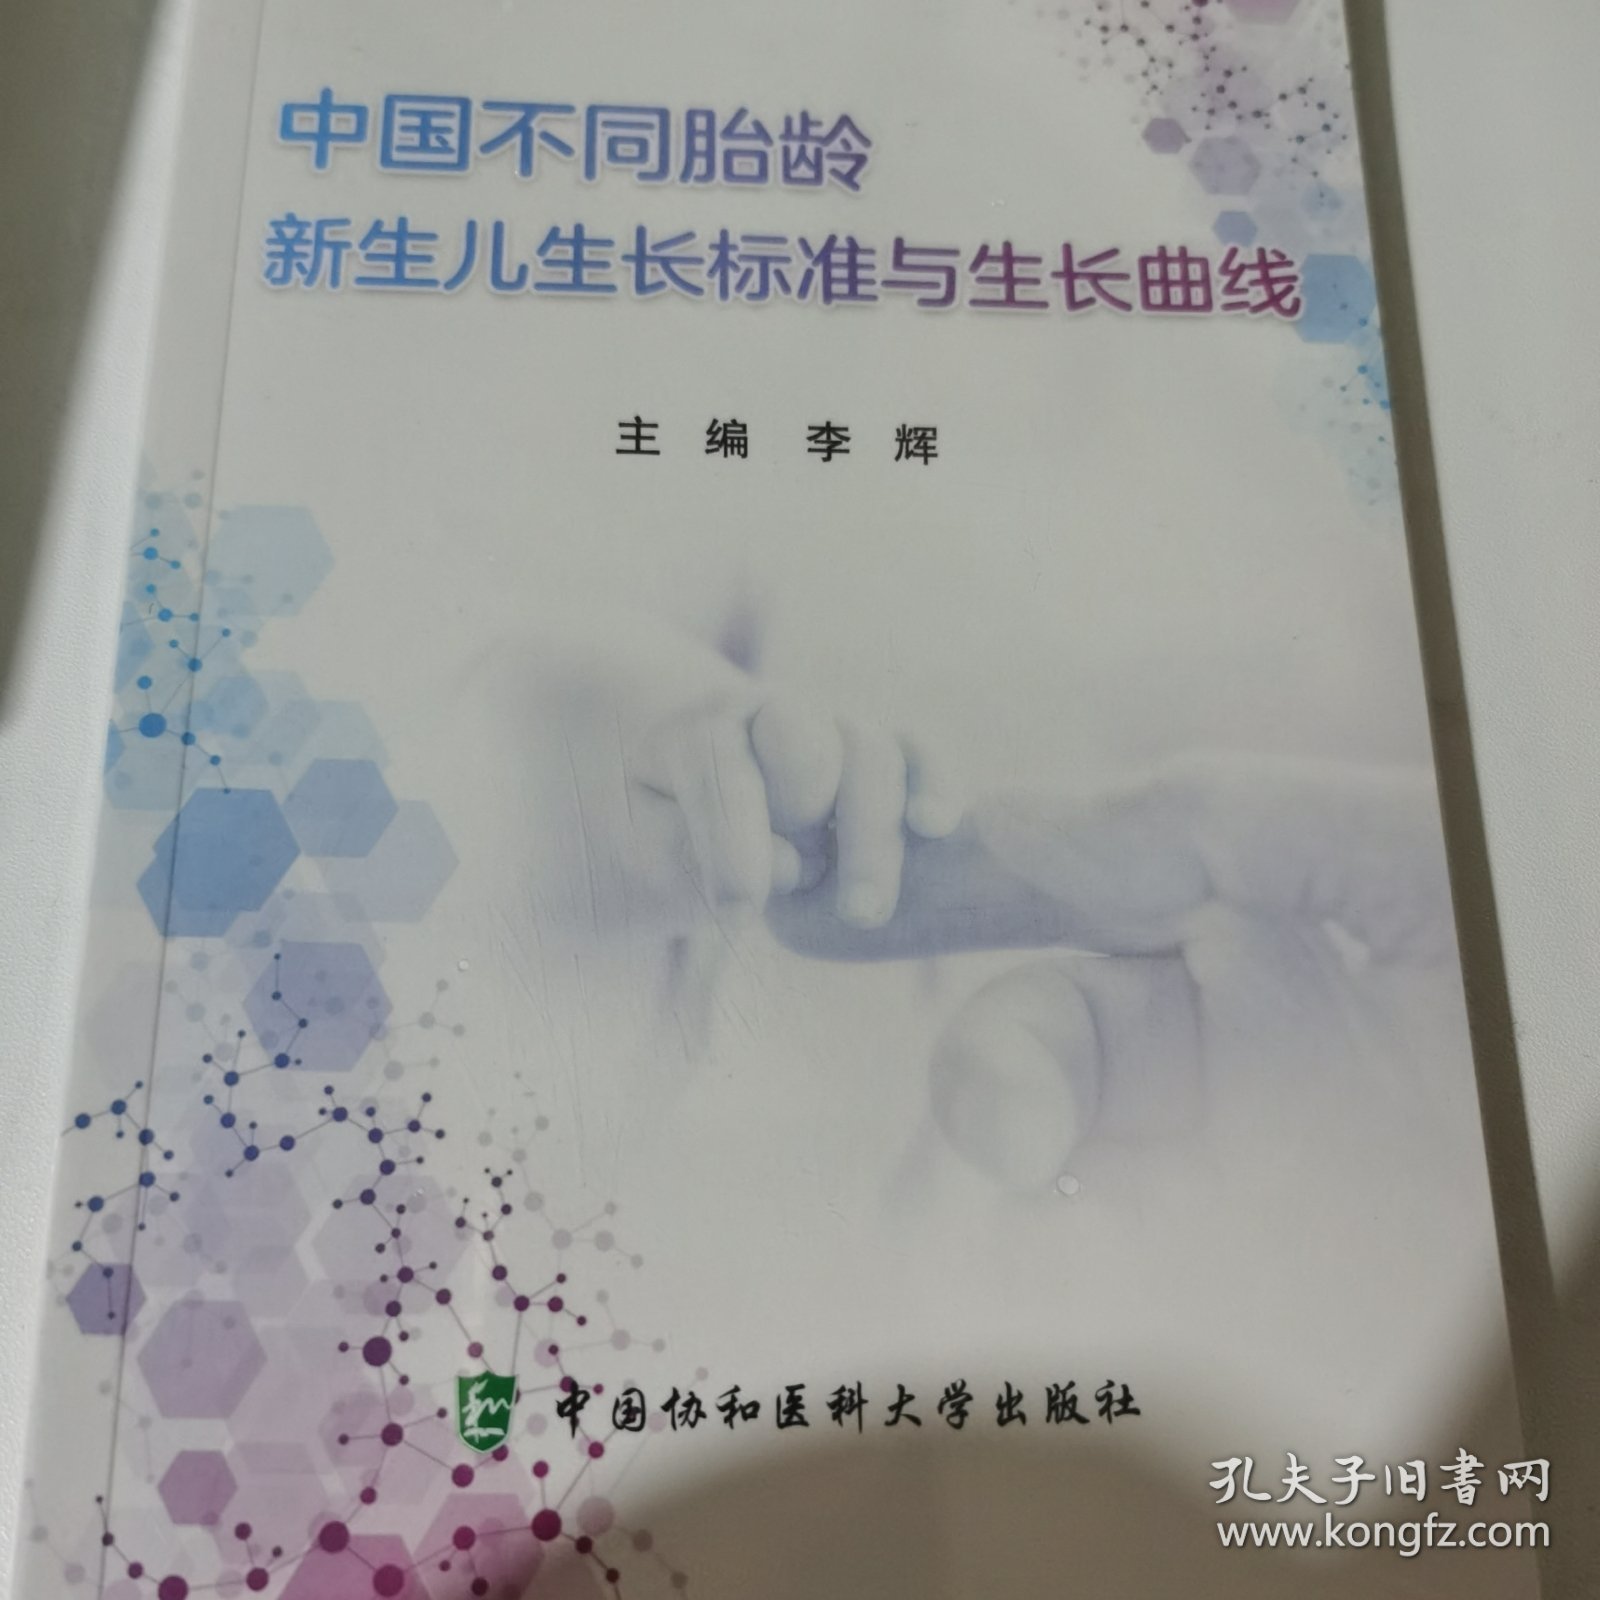 中国不同胎龄新生儿生长标准与生长曲线